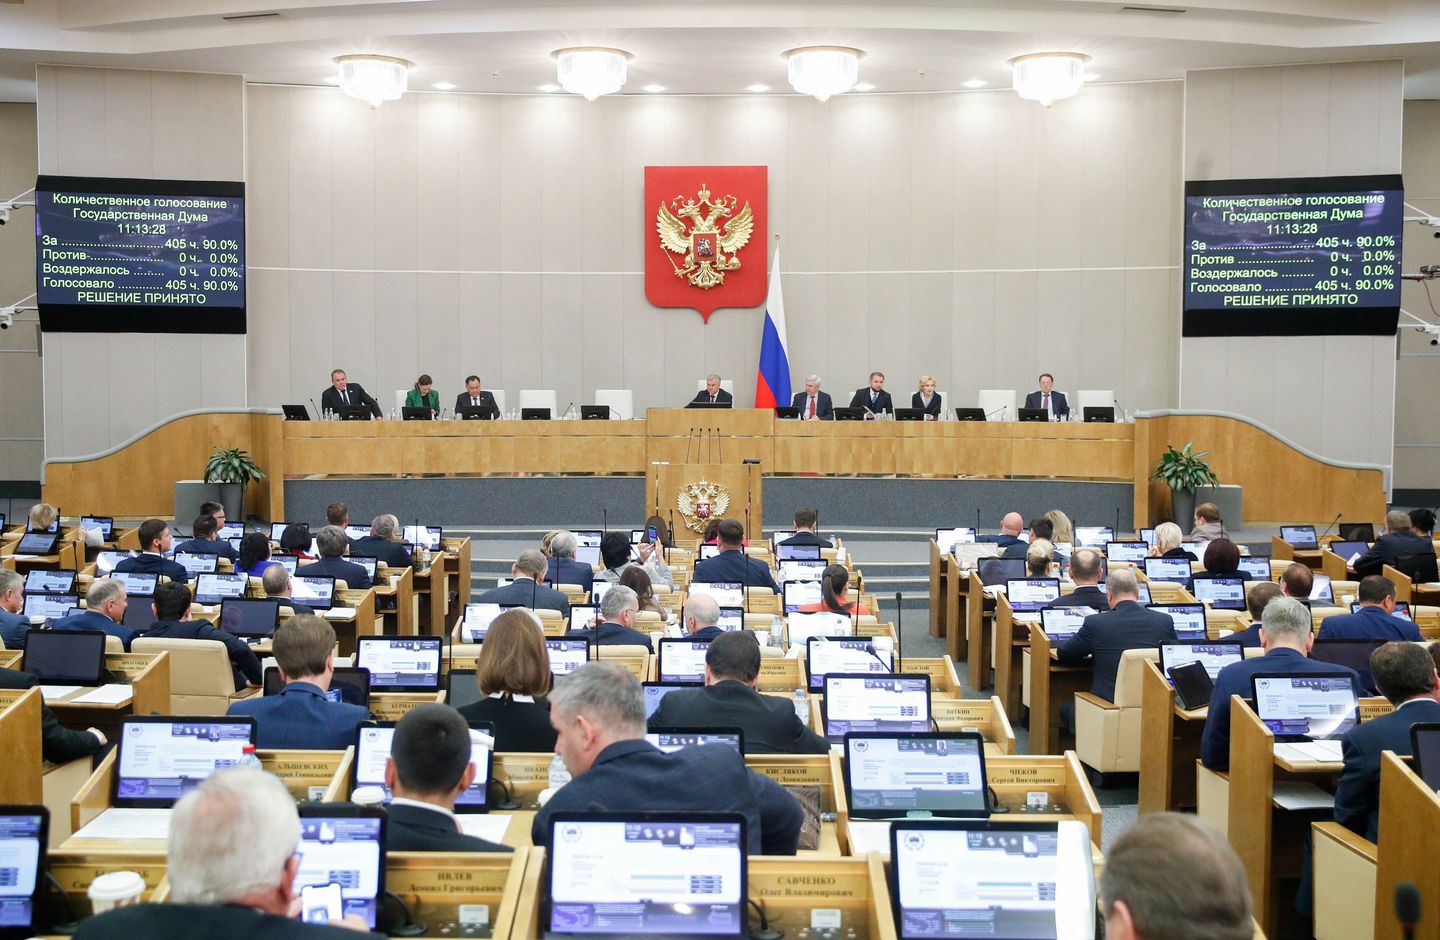 Rus milletvekilleri LGBTQ 'propagandasına' karşı yeni yasa tasarısını inceledi